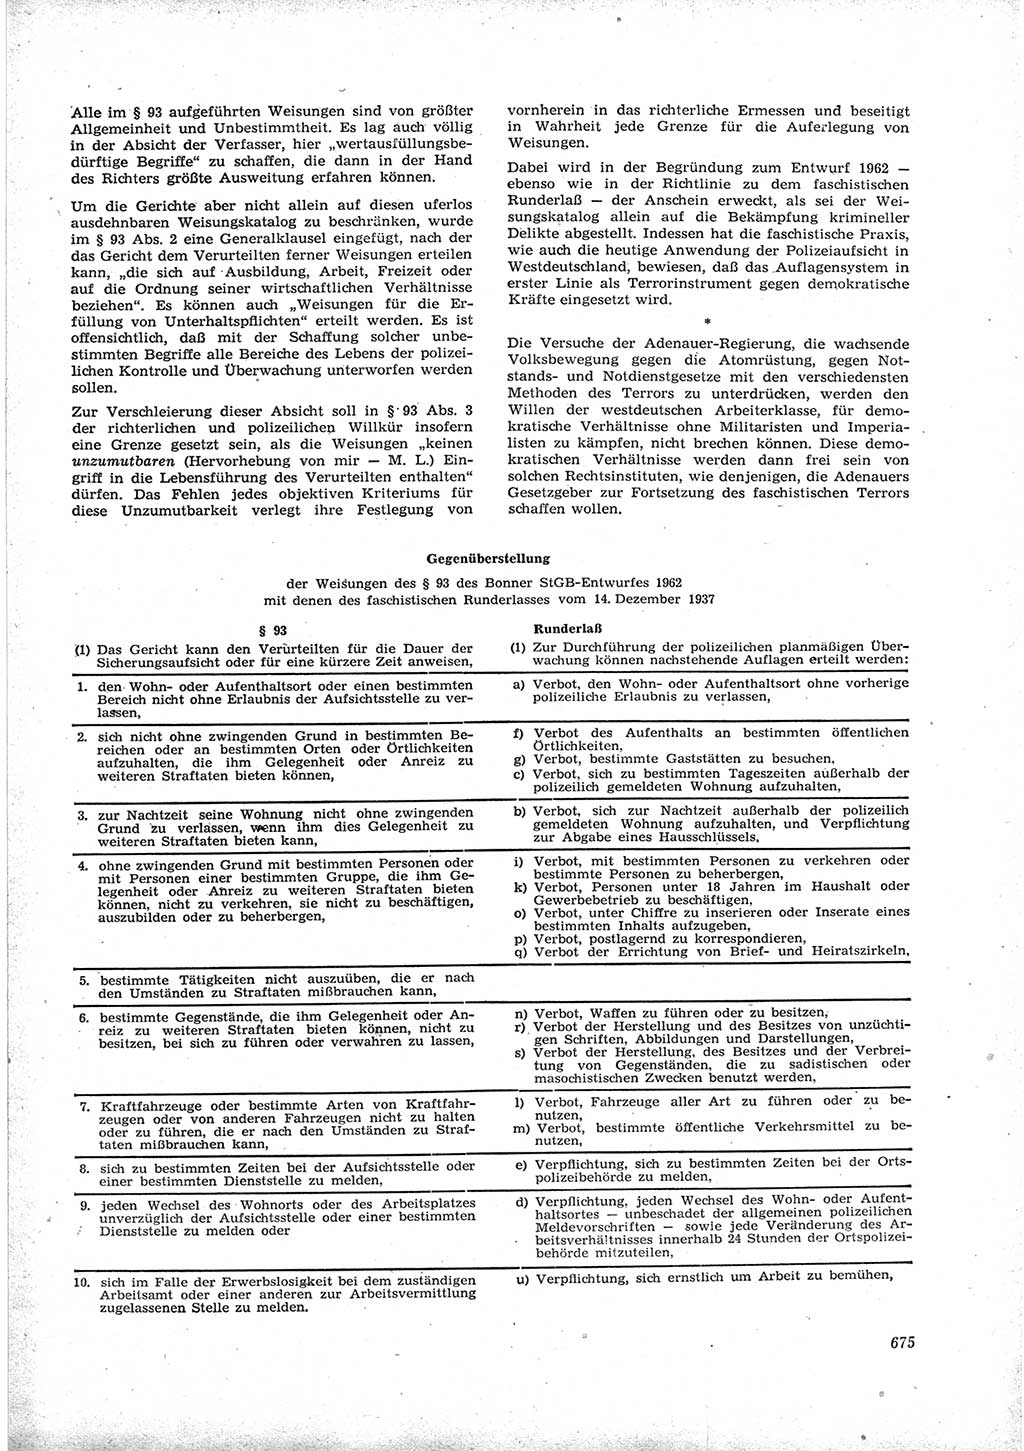 Neue Justiz (NJ), Zeitschrift für Recht und Rechtswissenschaft [Deutsche Demokratische Republik (DDR)], 16. Jahrgang 1962, Seite 675 (NJ DDR 1962, S. 675)